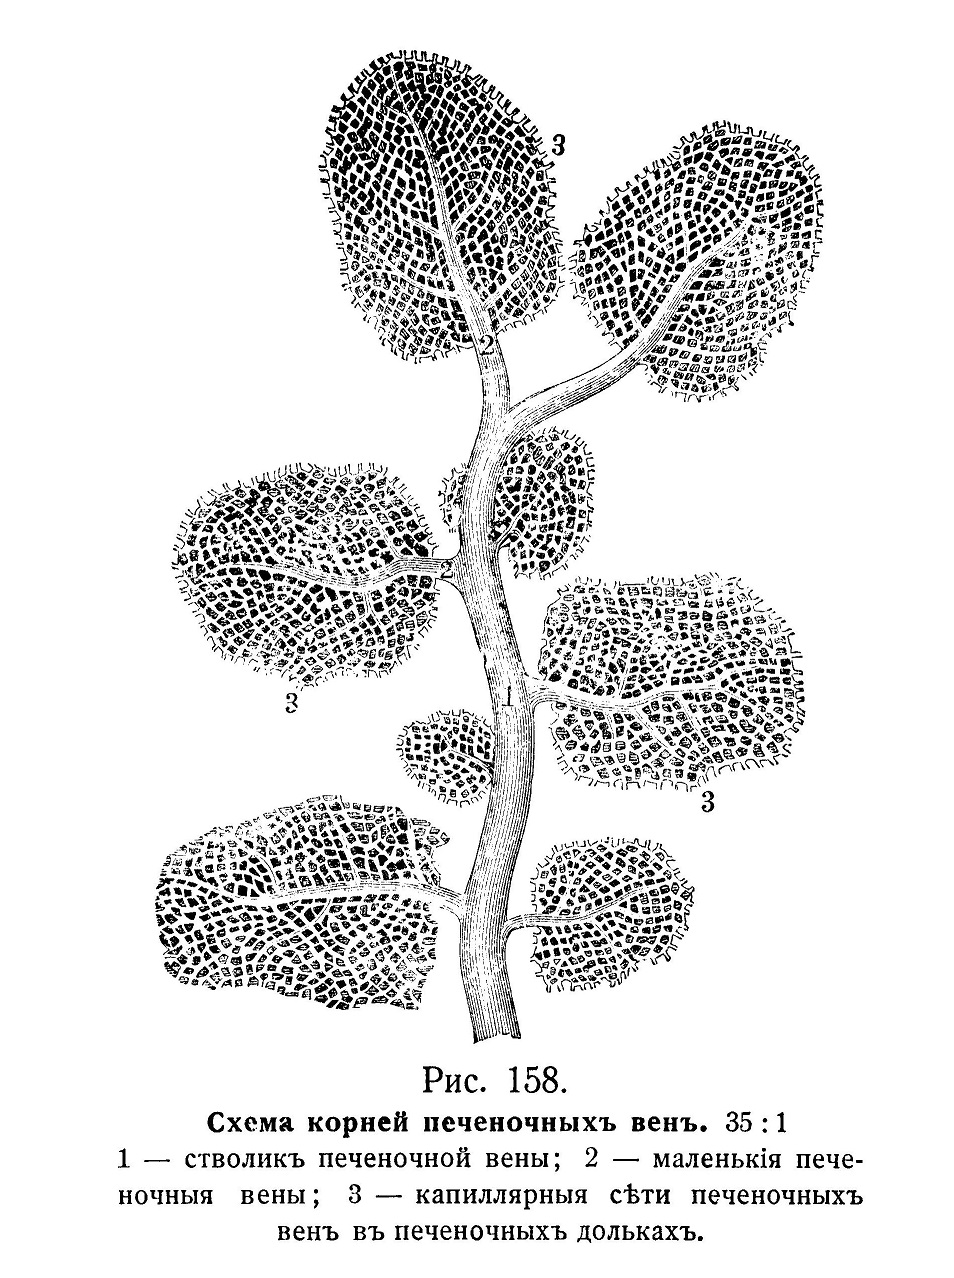 Схема корней печеночных вен